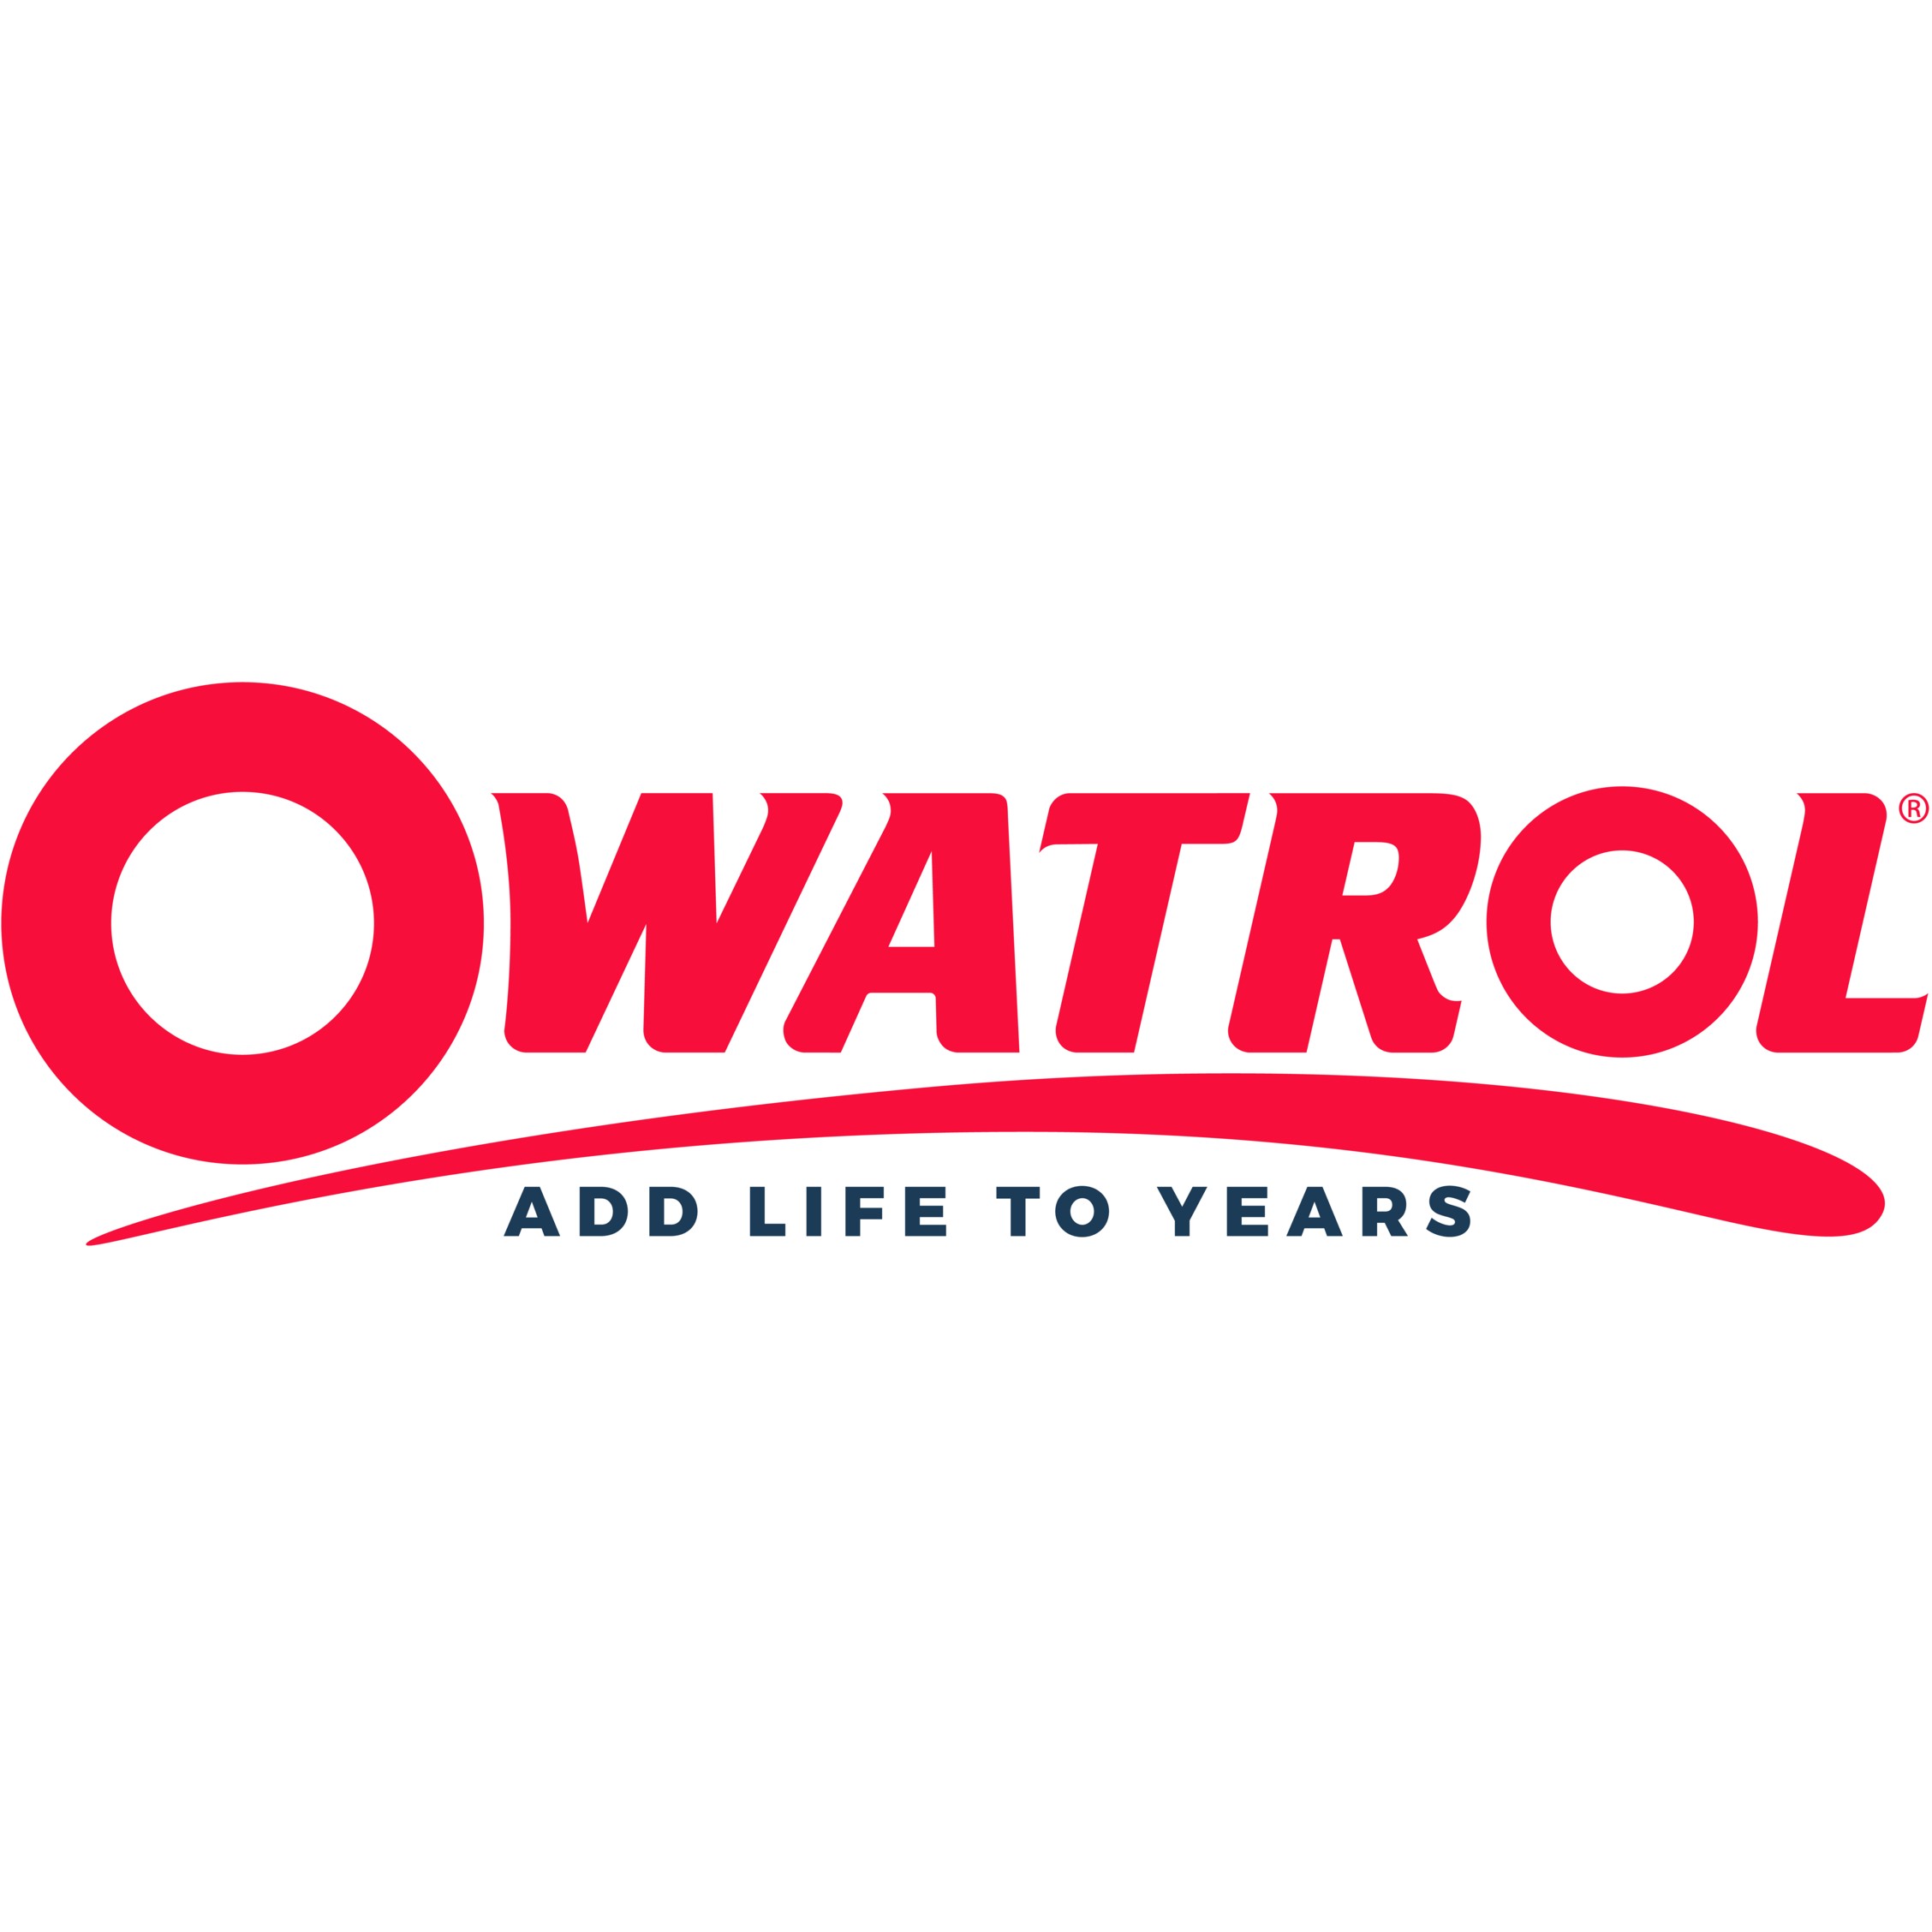 OWATROL - Groupe DURIEU